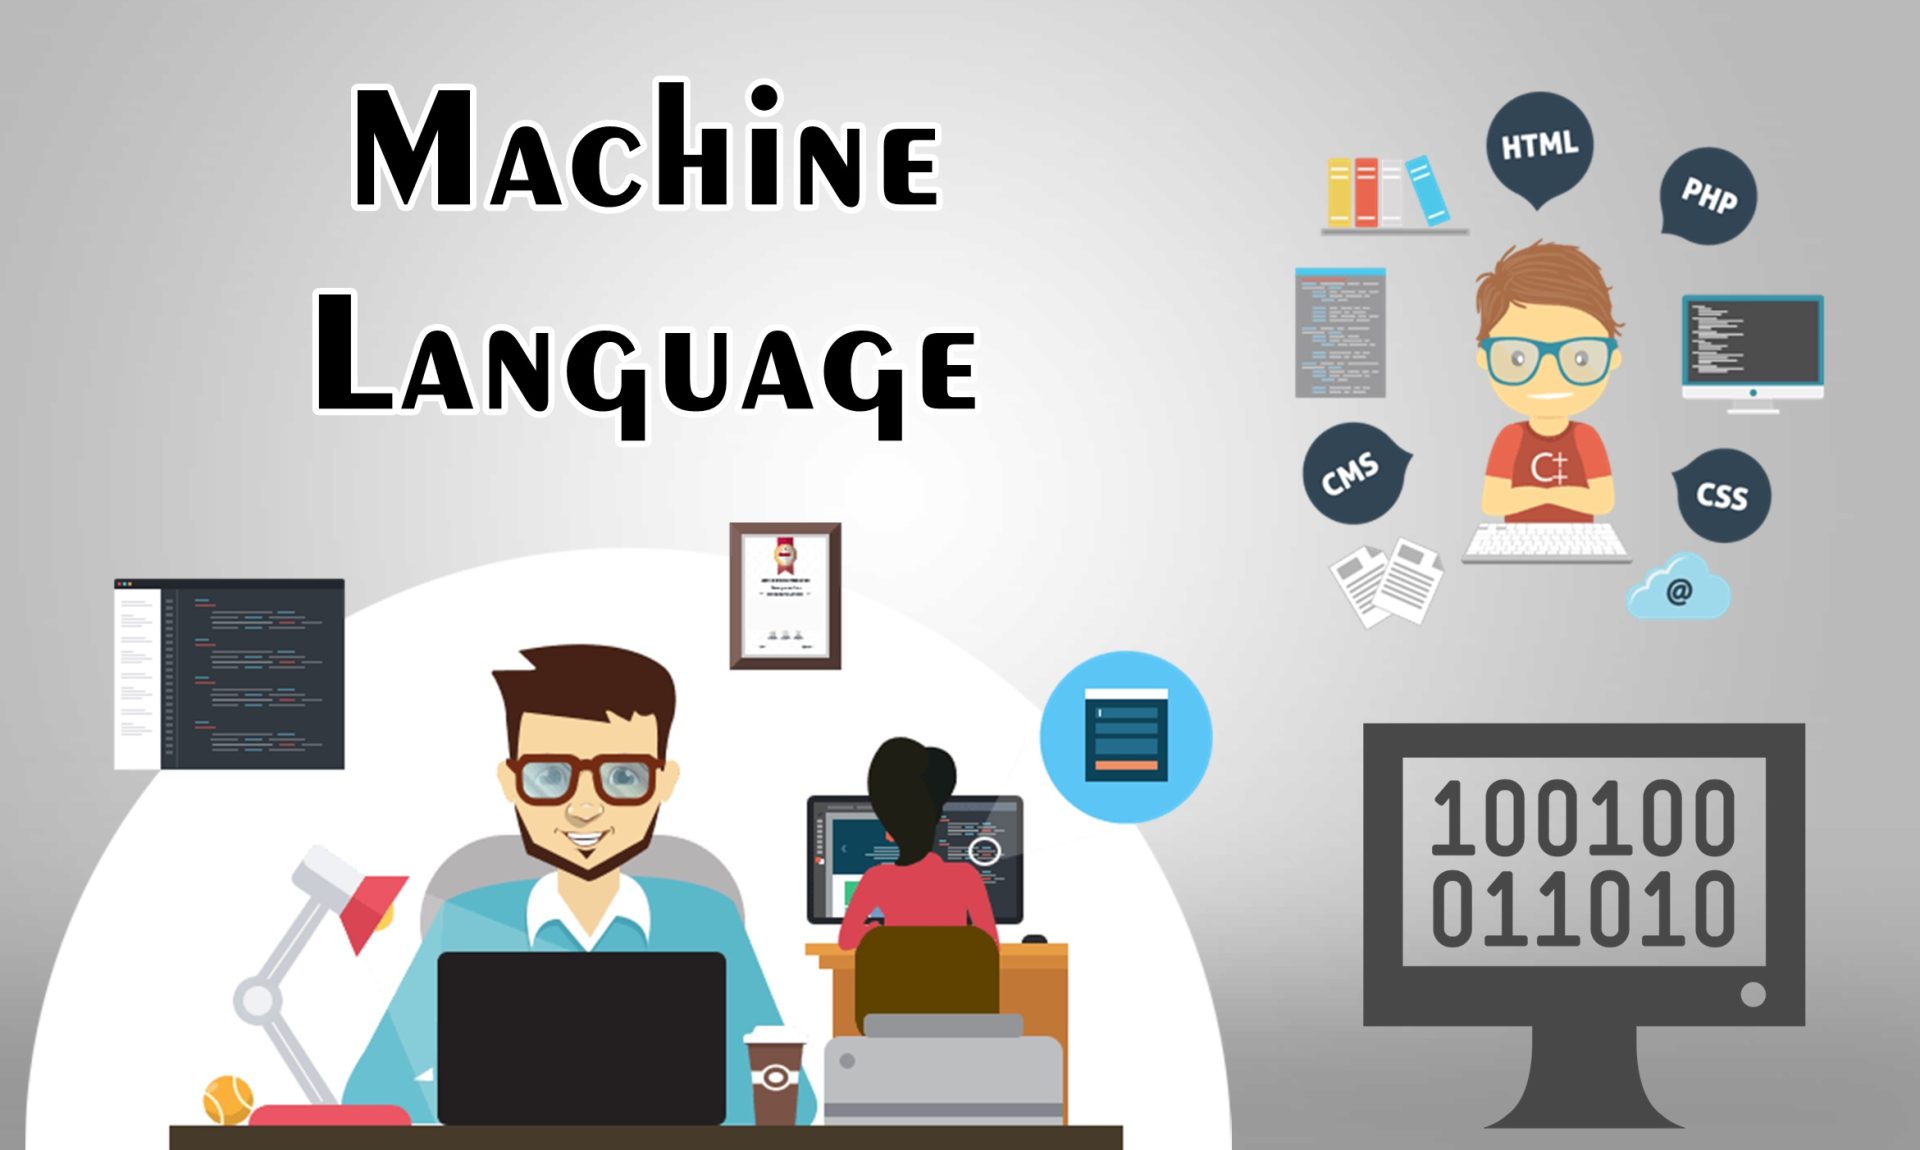 Machine language